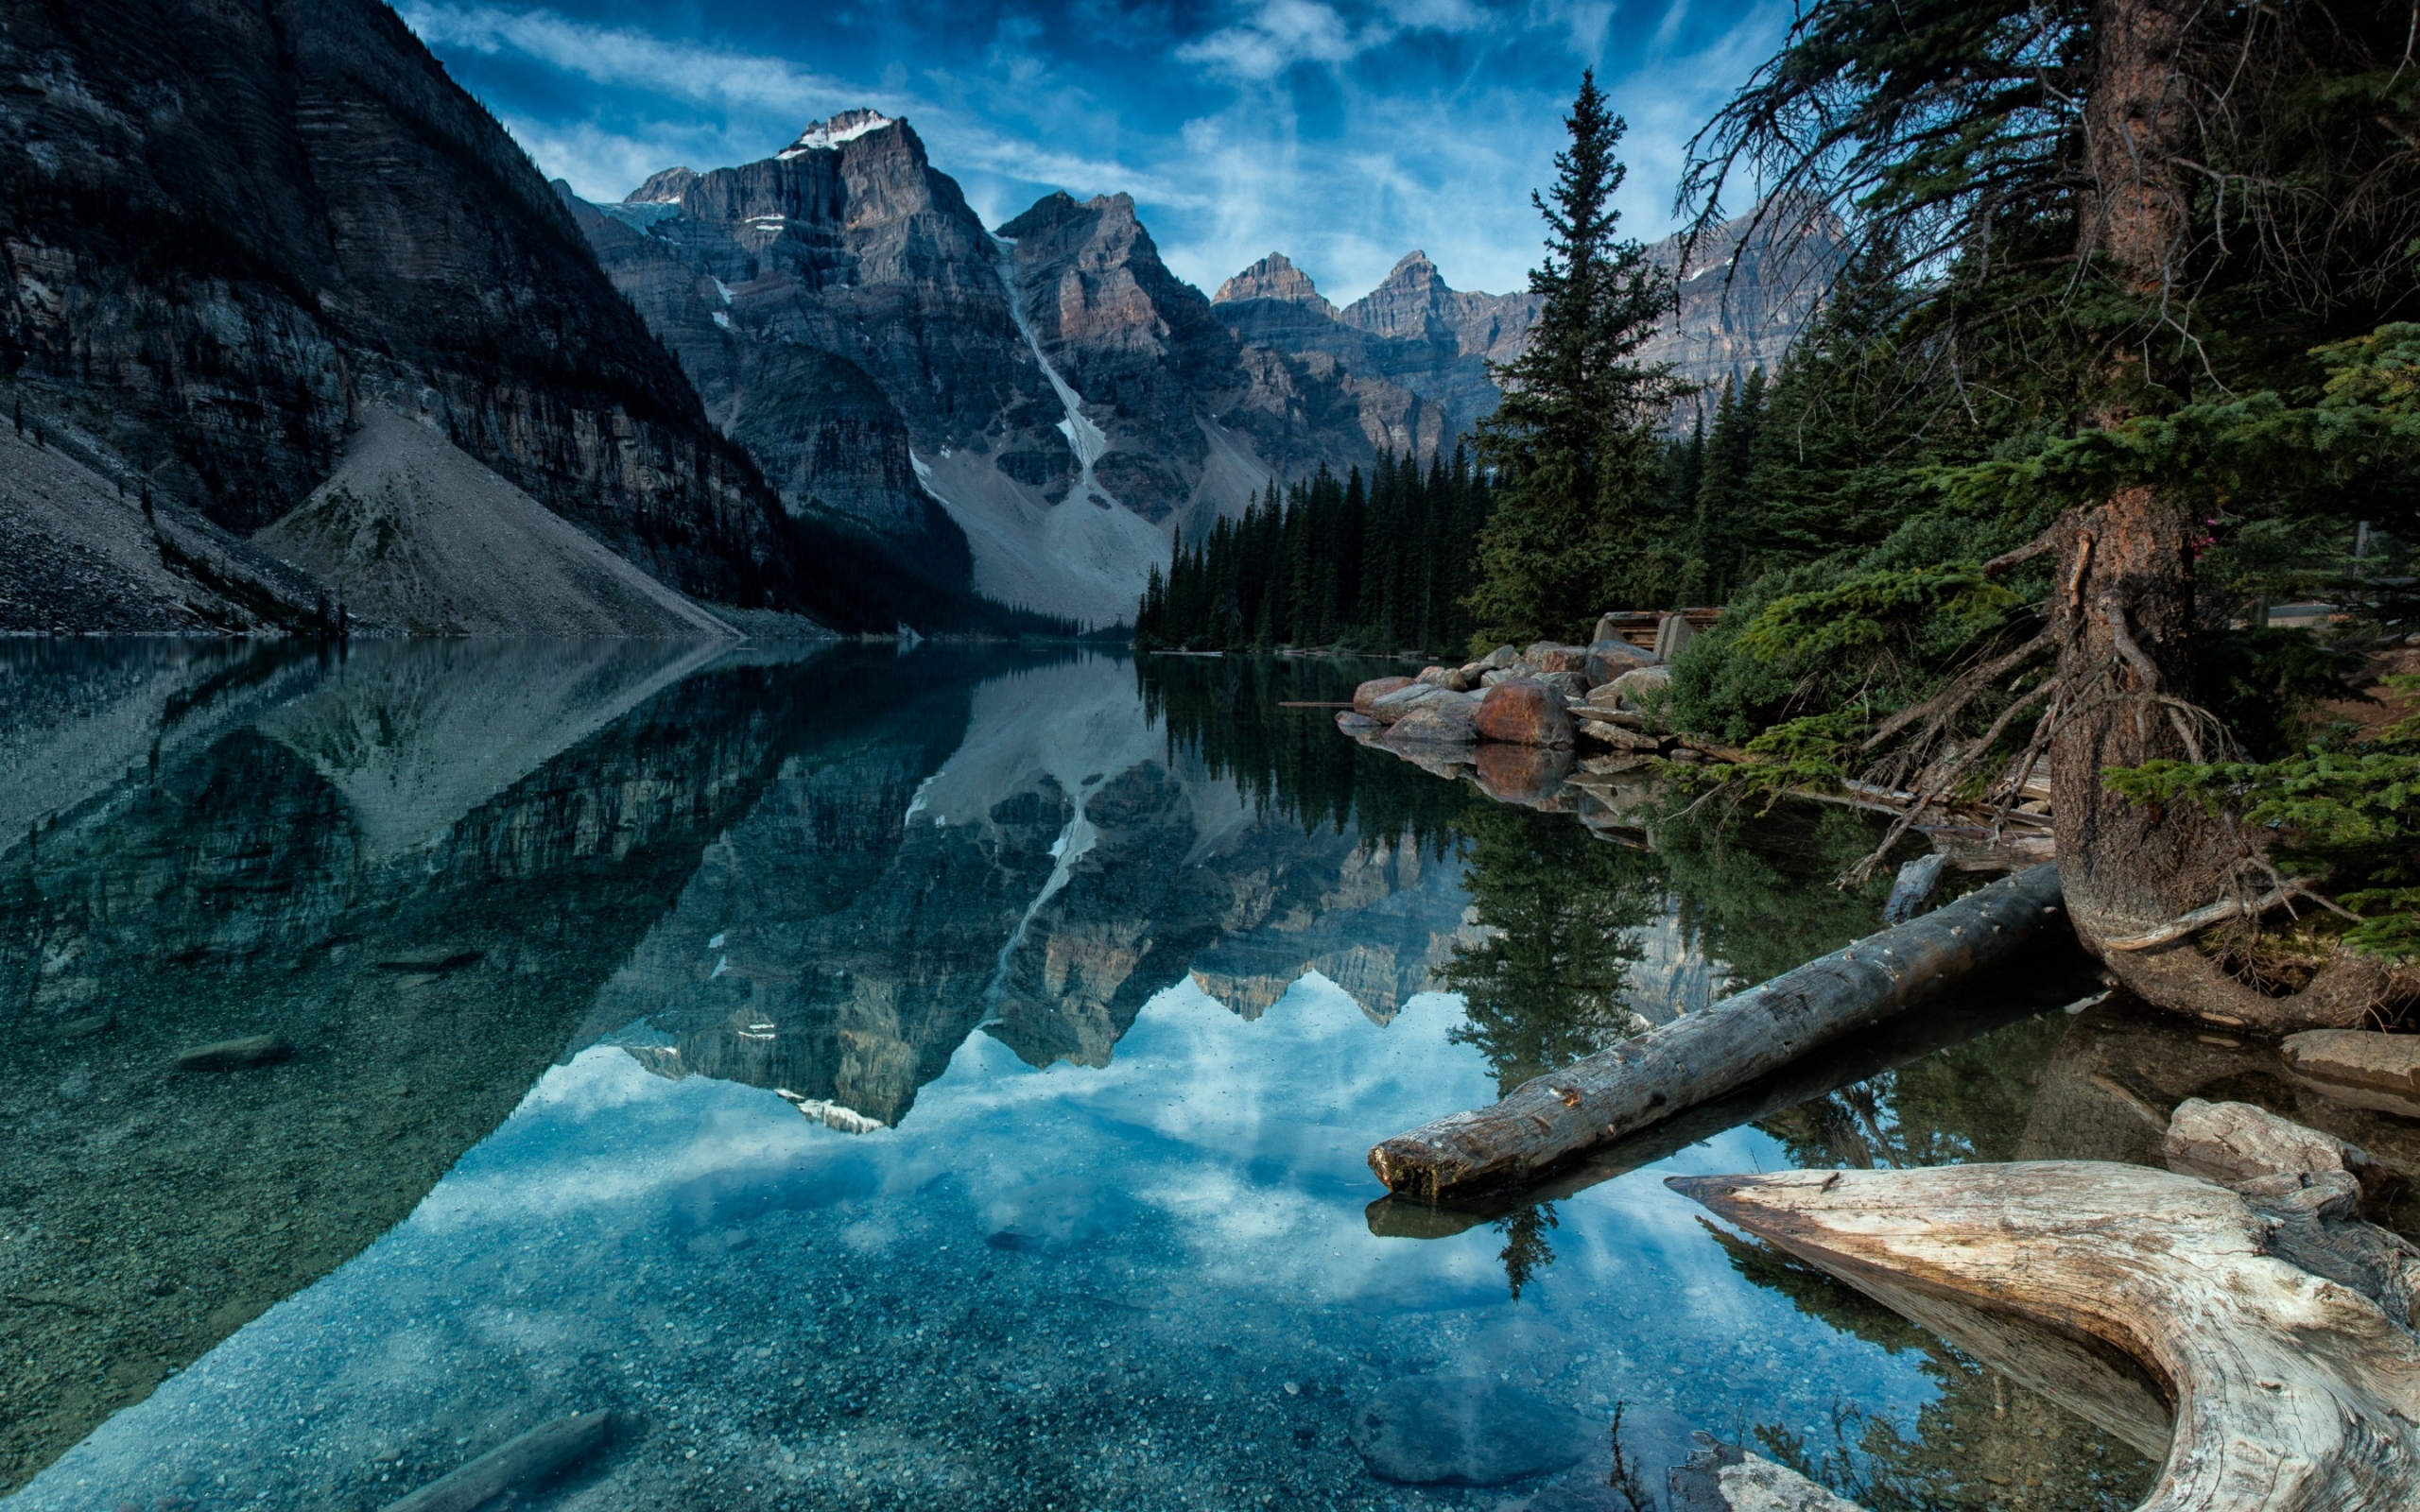 Moraine Lake Alberta Canada for 2560 x 1600 widescreen resolution